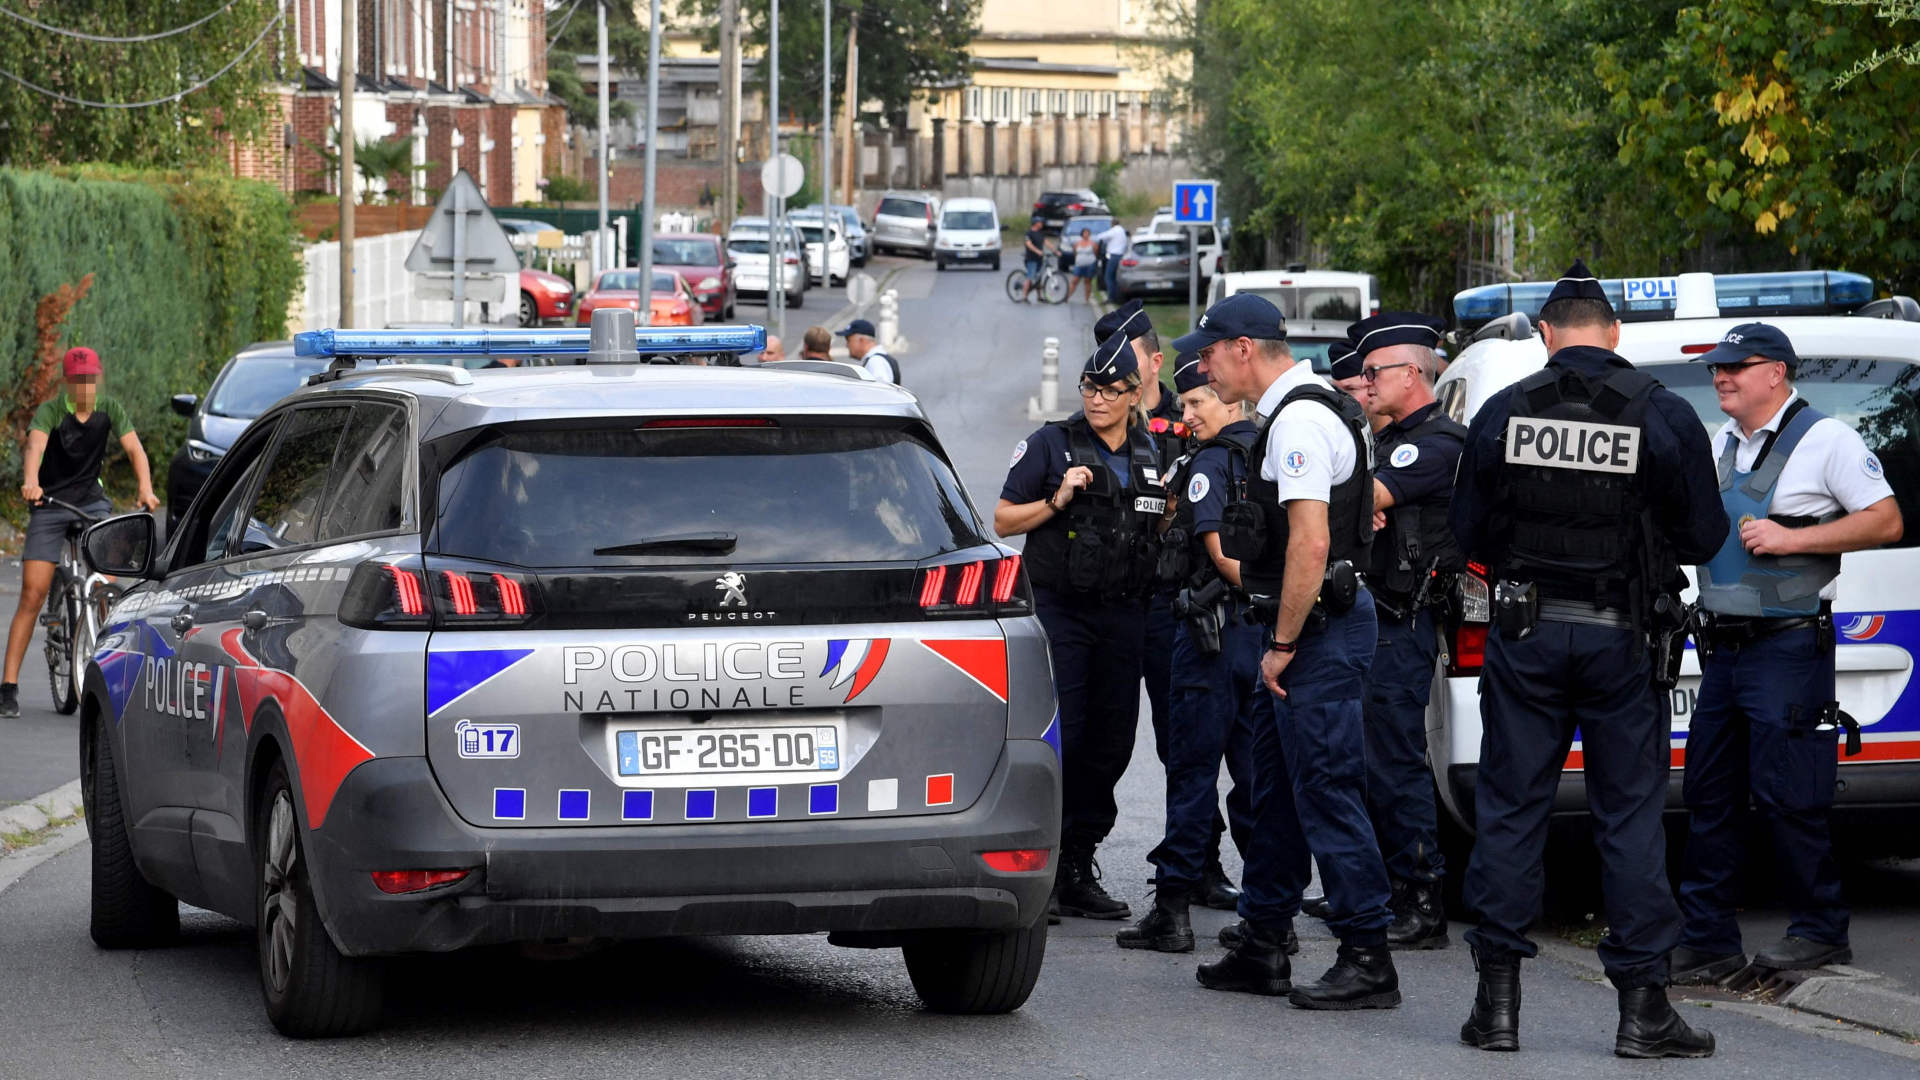 Polizisten stehen neben einem Polizeiwagen in der nordfranzösischen Stadt Lourches. | AFP